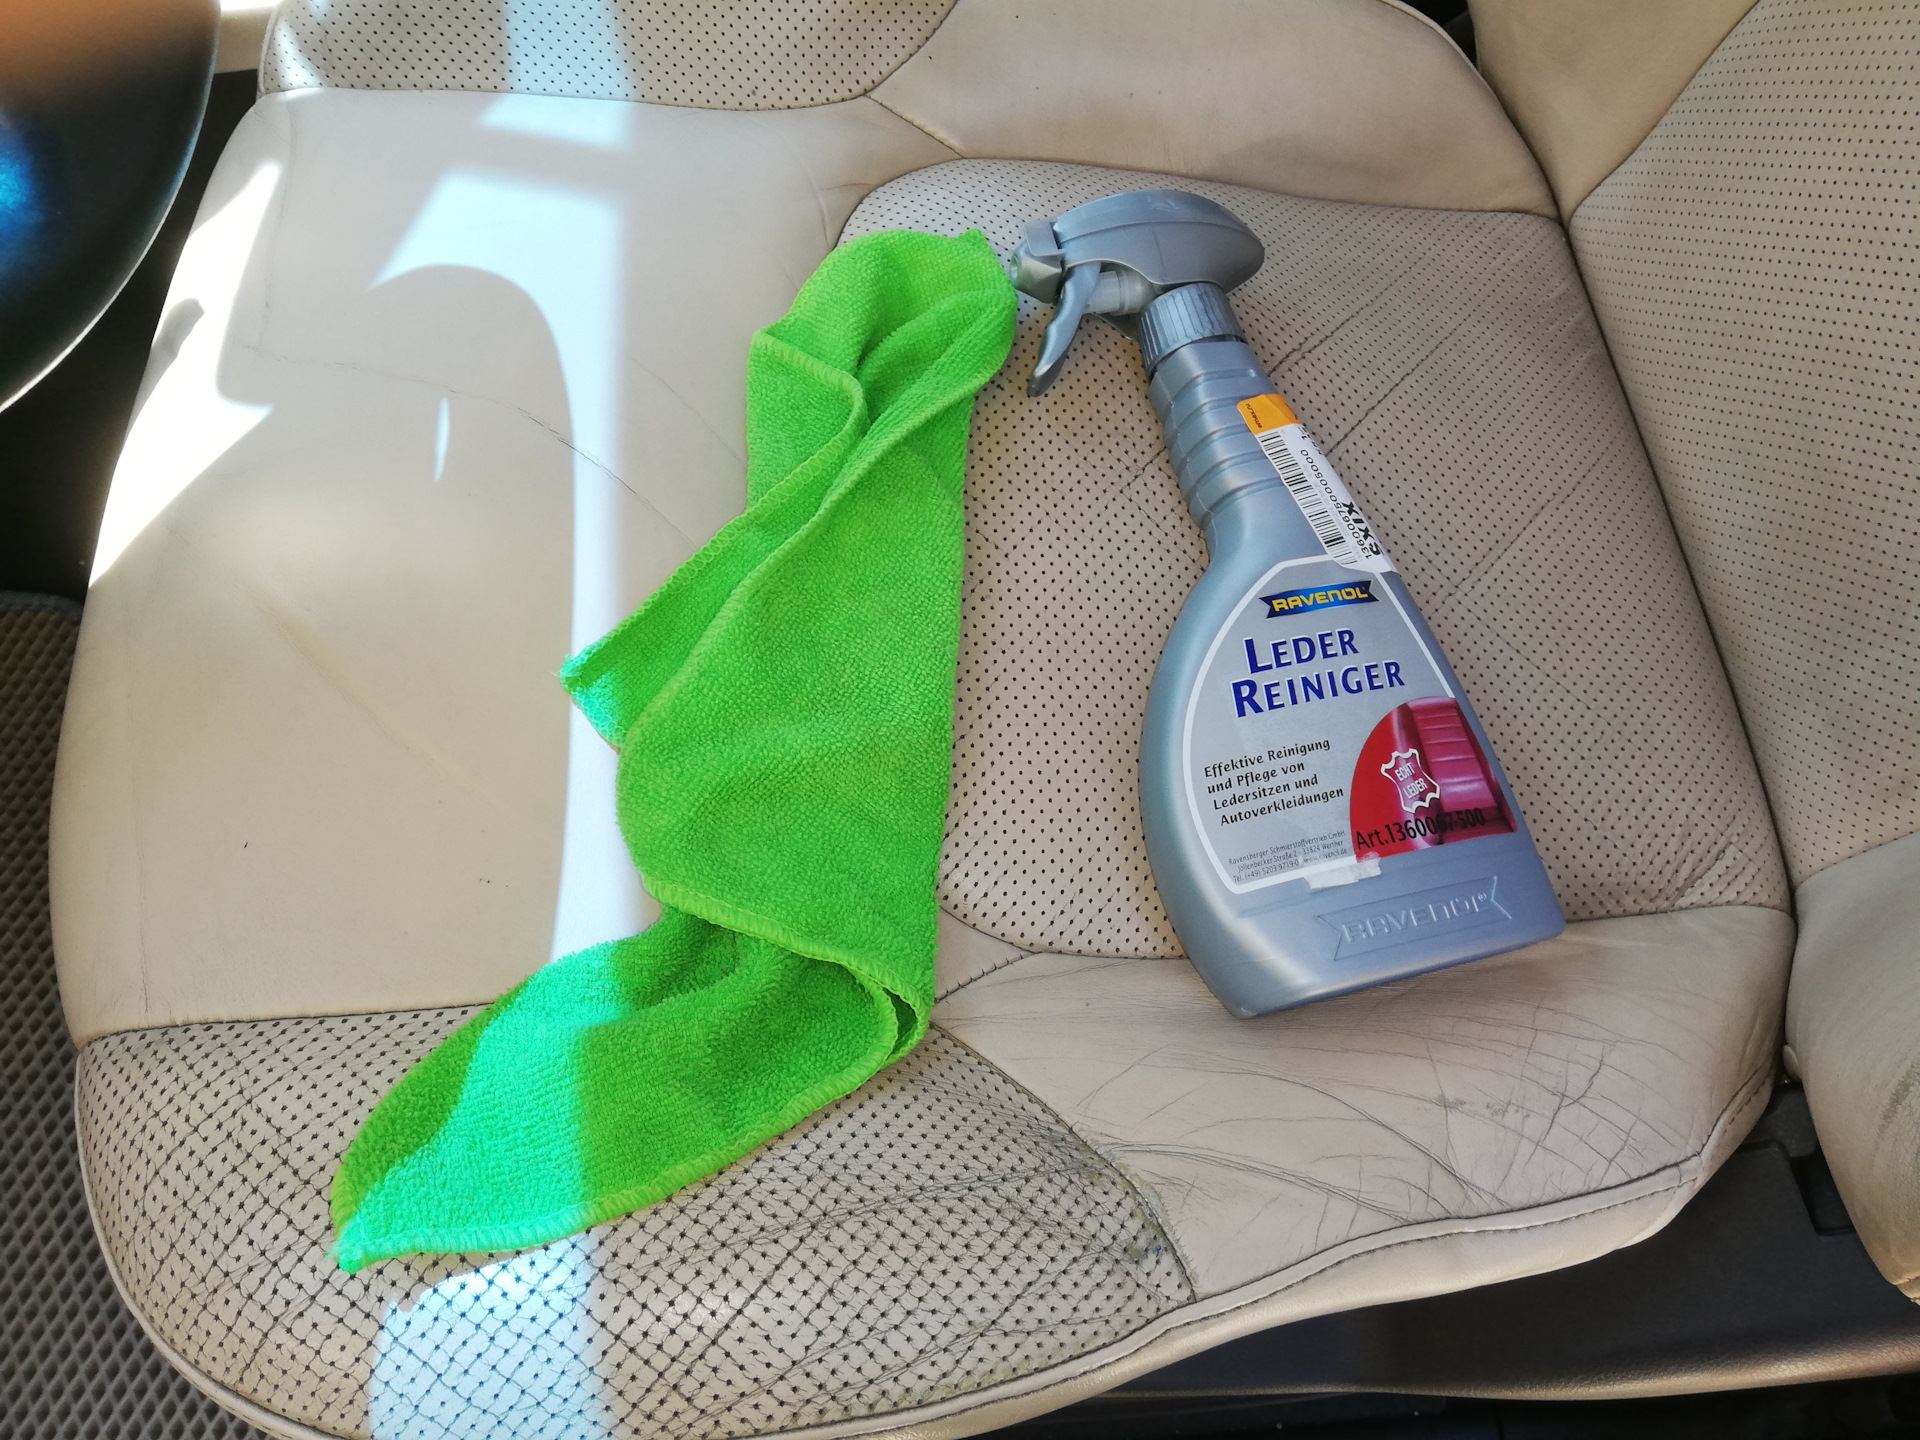 Чистящее средство для автомобиля